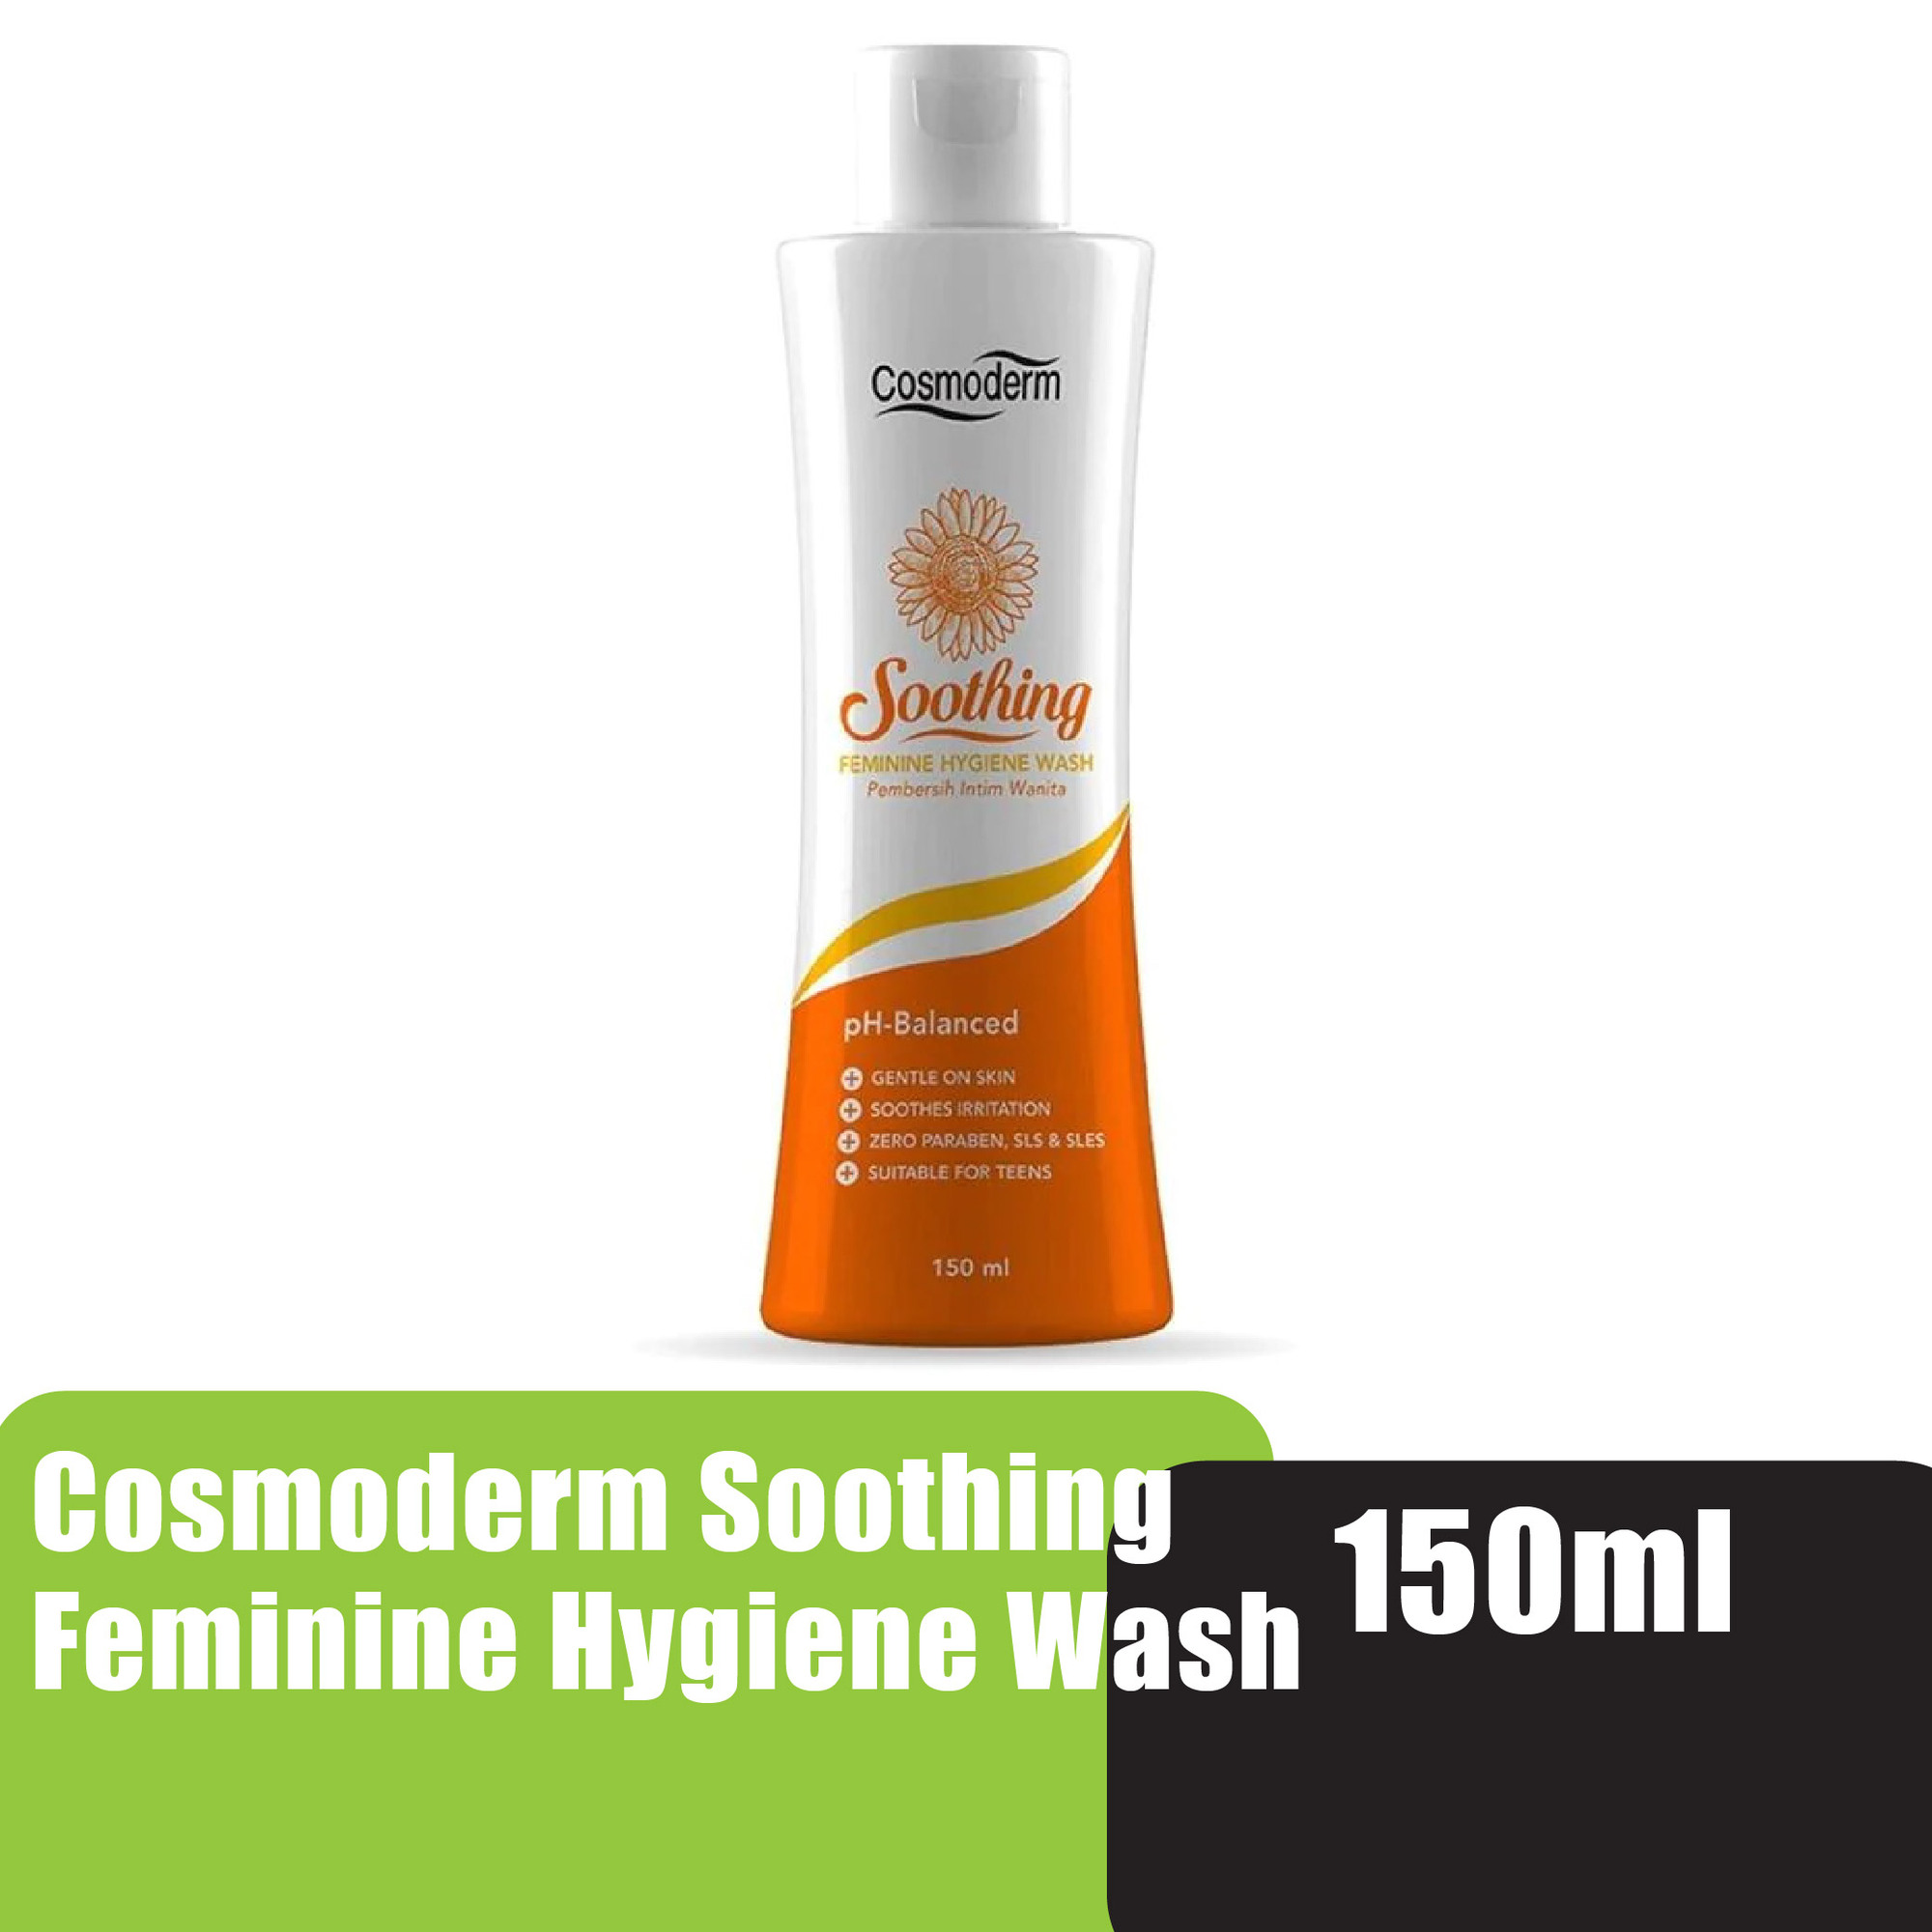 Cosmoderm Soothing Feminine Hygiene Wash 150ml